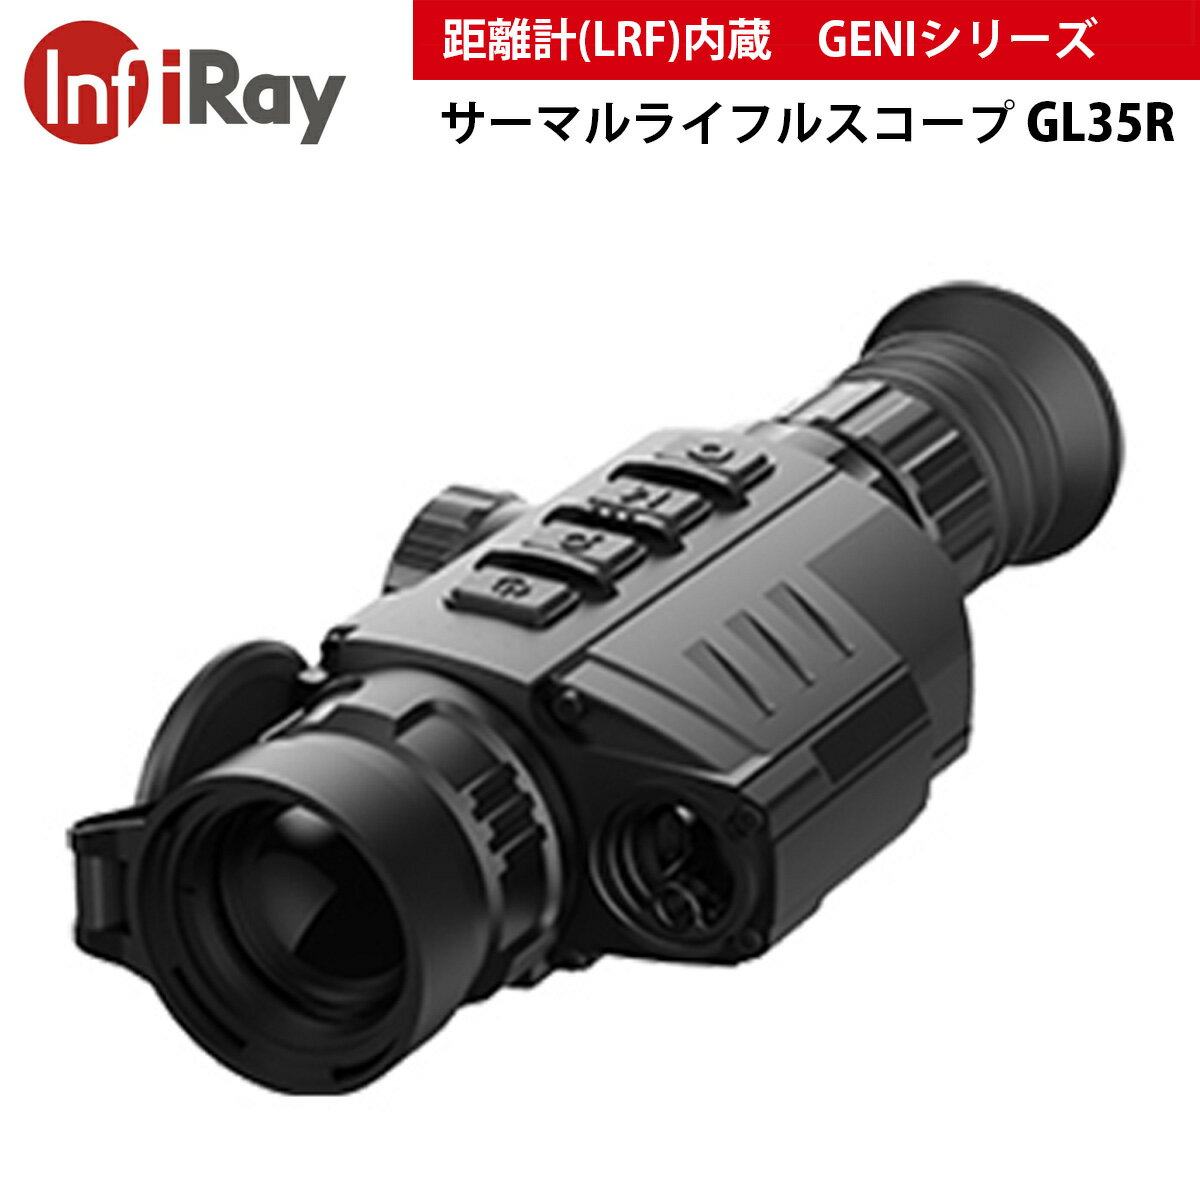 iRay サーマルライフルスコープ GENIシリーズ GL35R WiFi画像送信 電子コンパス モーションセンサー ウルトラクリアモード 1000m 距離計 8種類のレティクル 32GBメモリー 耐衝撃性